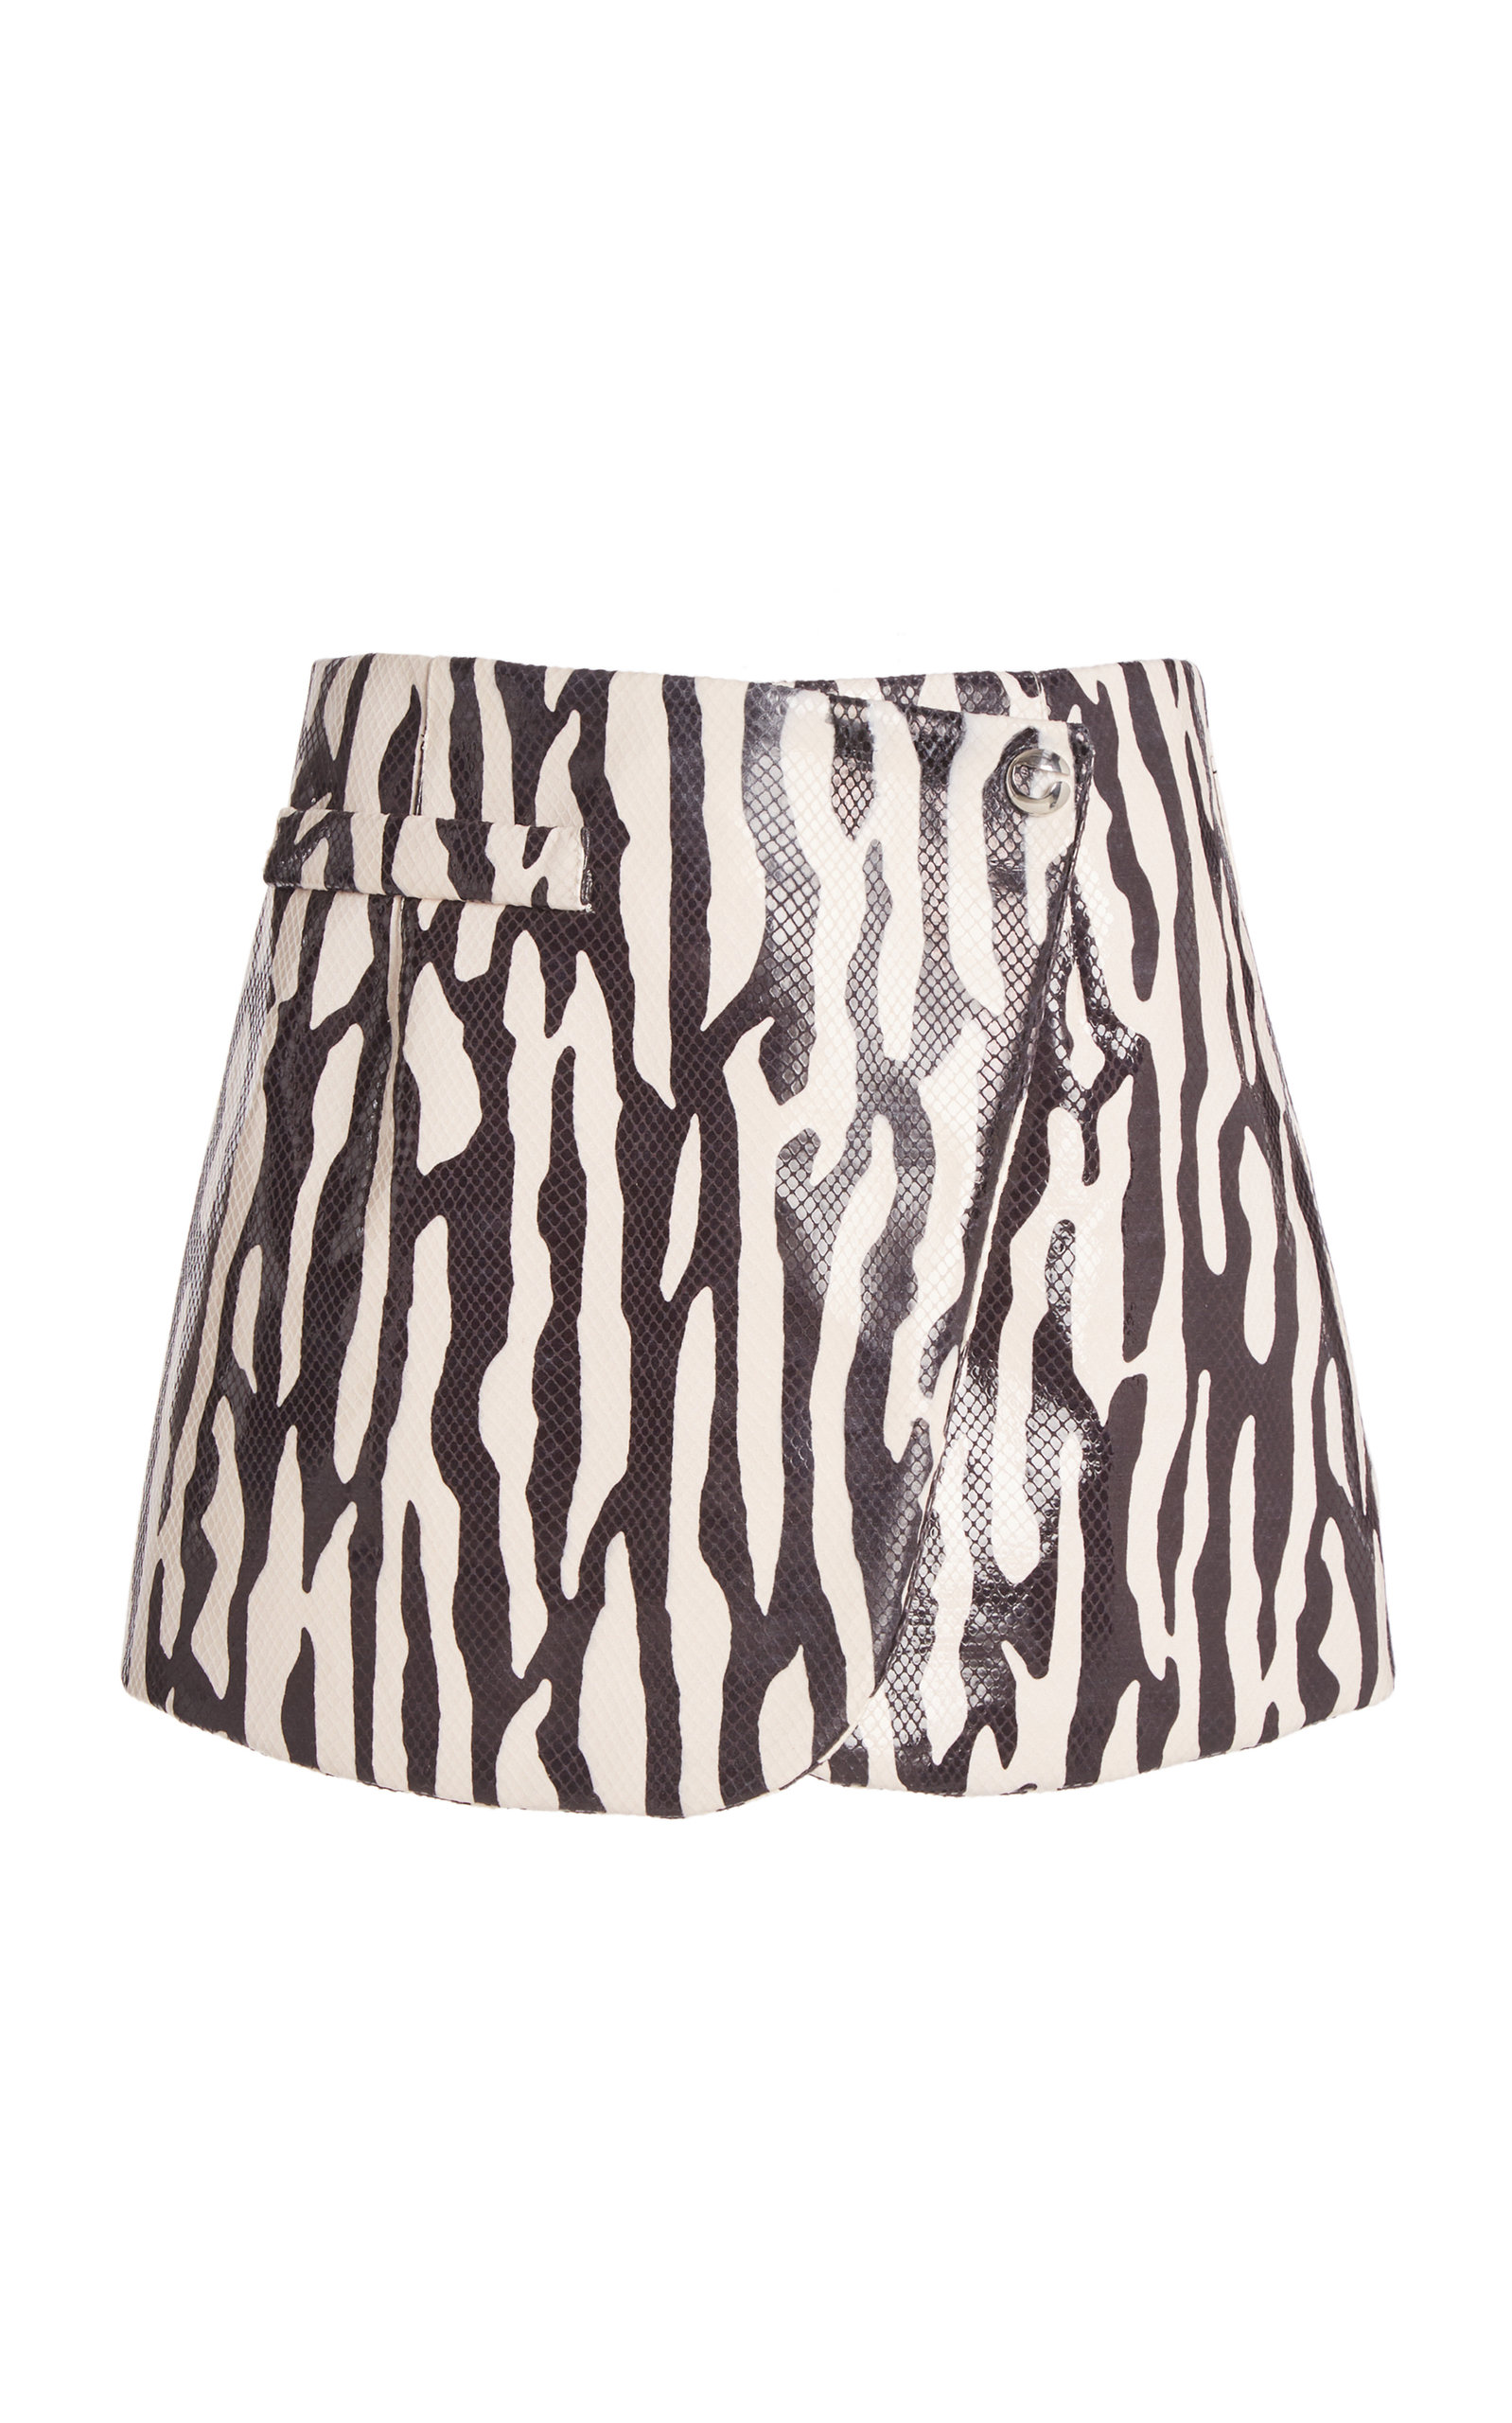 Coperni - Women's Zebra Print Mini Skirt - Black/white - Only At Moda Operandi